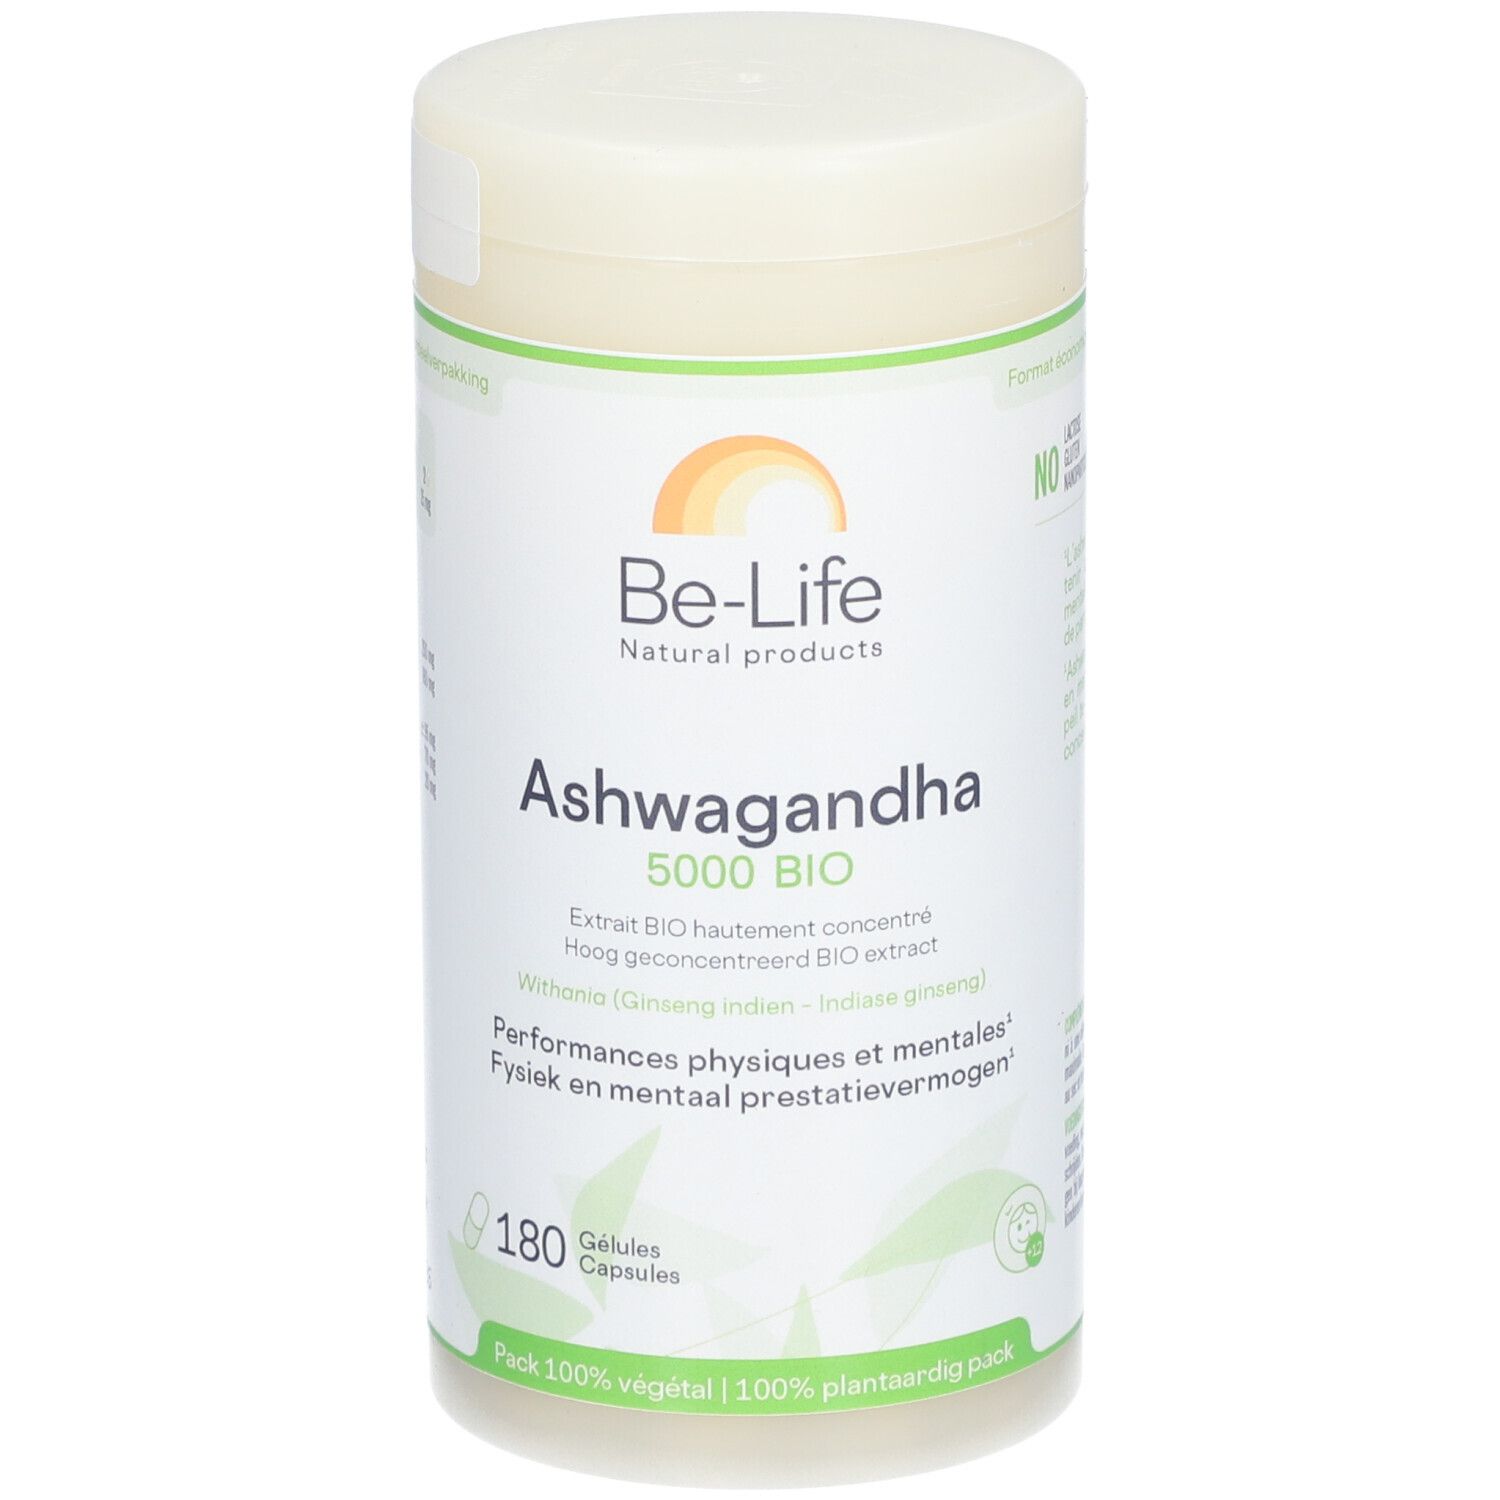 Be-Life Ashwagandha 5000 BIO